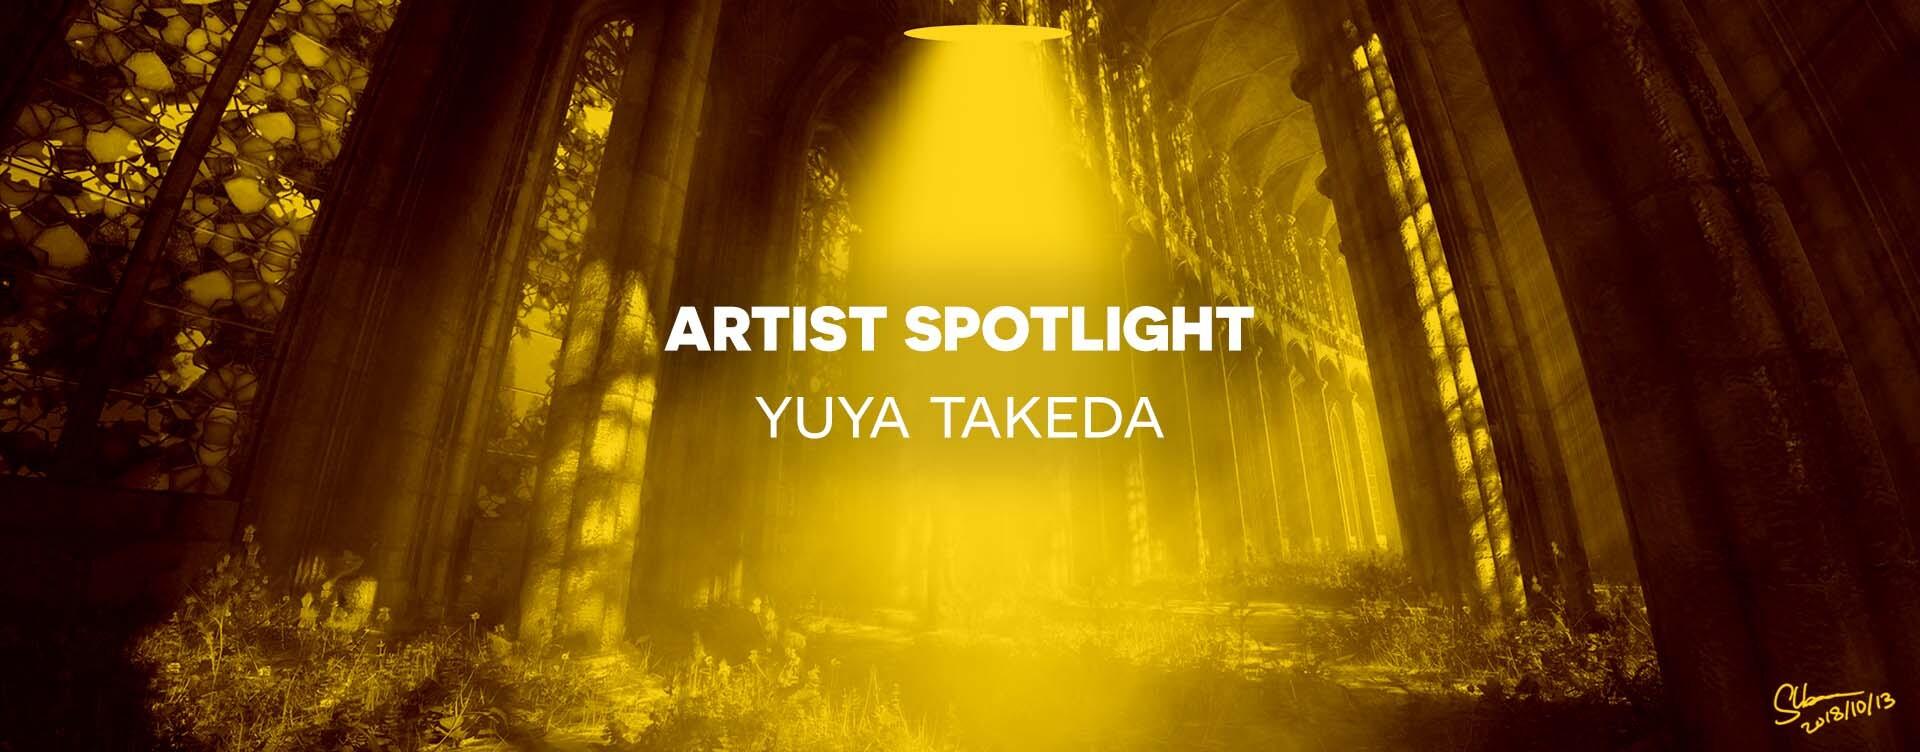 Artist Spotlight Header